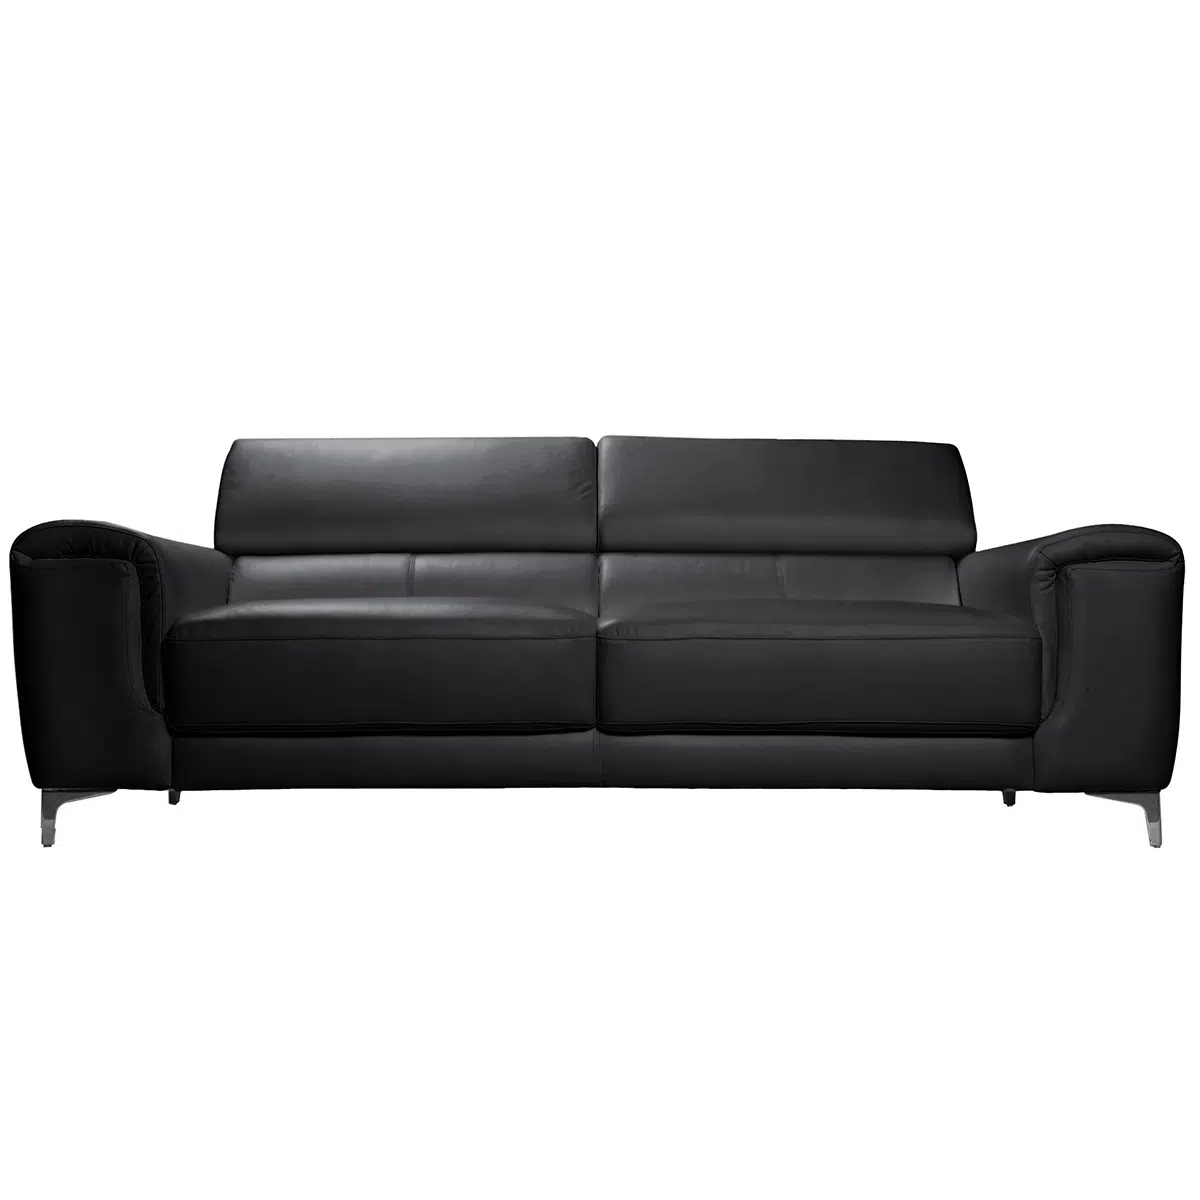 Canapé design avec têtières ajustables 3 places cuir noir et acier chromé NEVADA